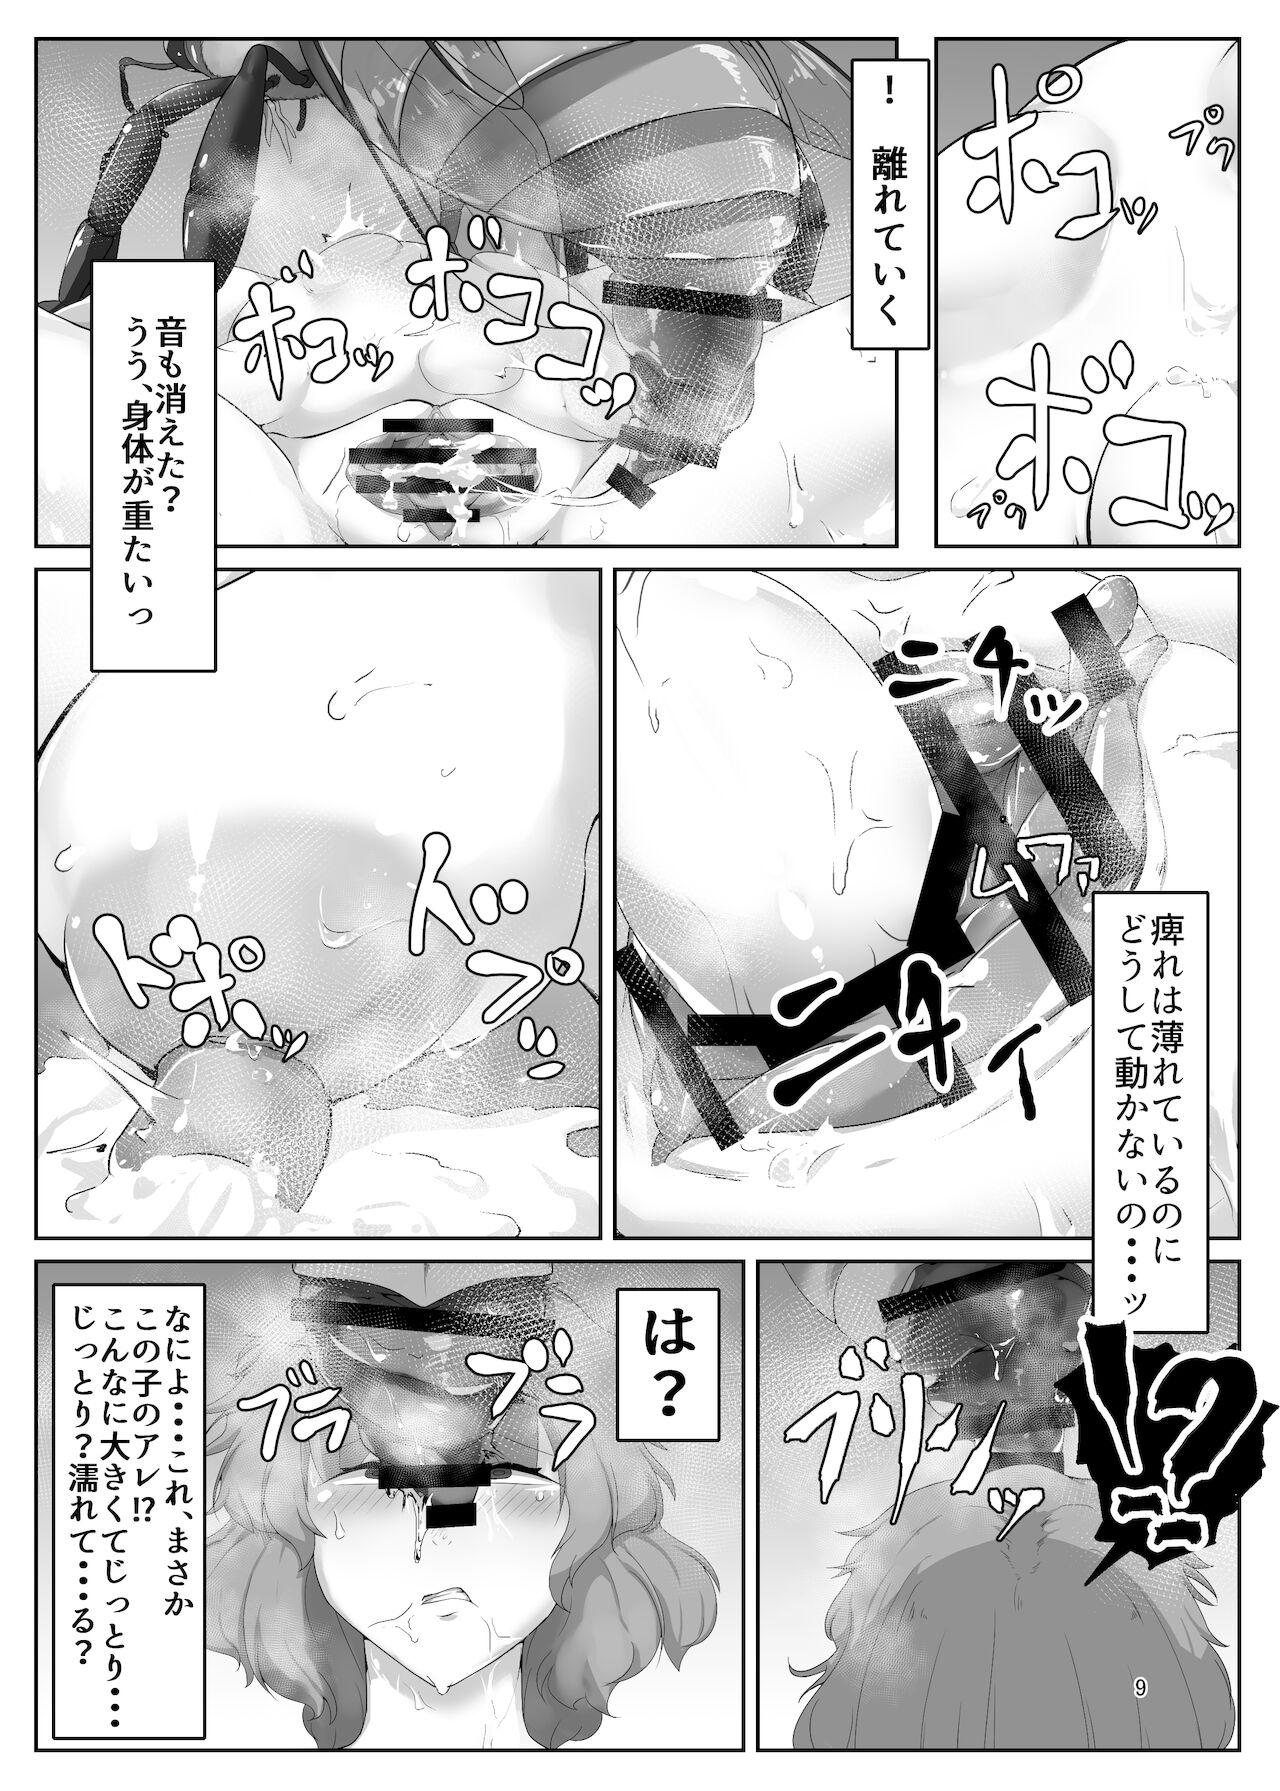 Gay Pawn kazami yuka ha hati ni otiru - Touhou project Scene - Page 9